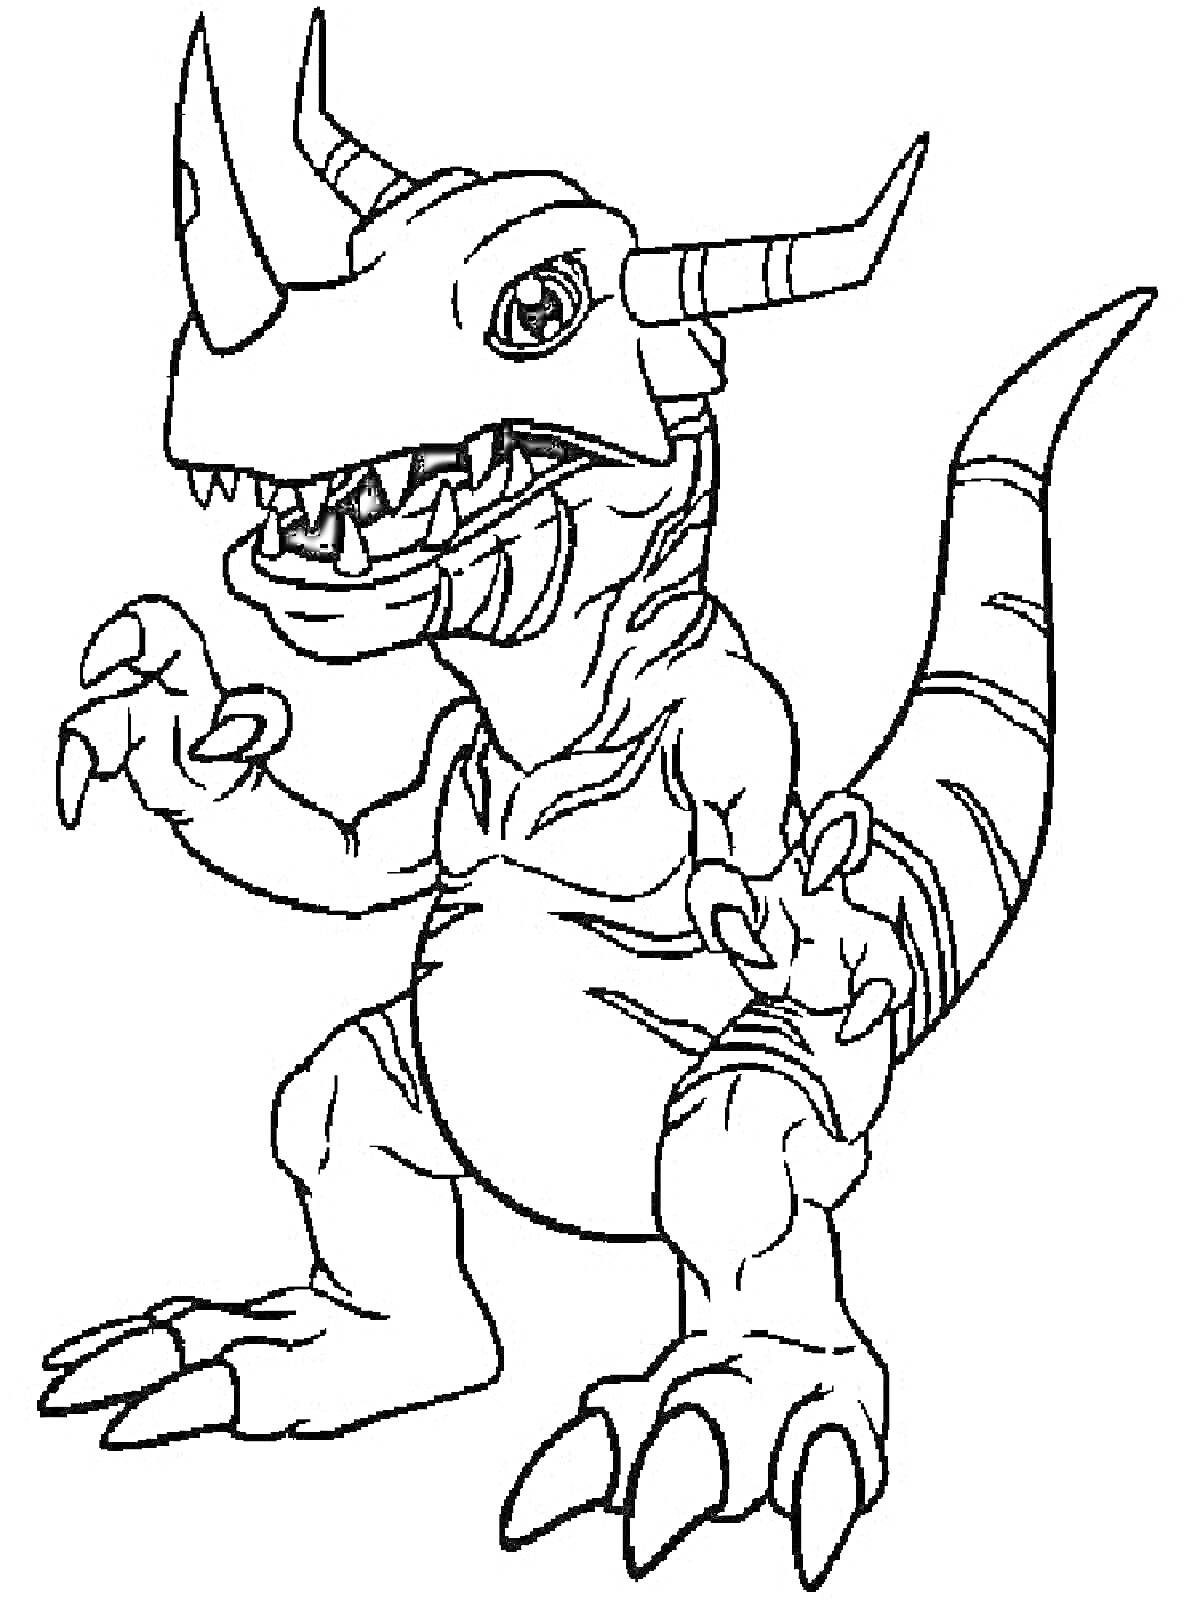 Дигимон с рогами и хвостом, Gruumon, когтистый динозавр